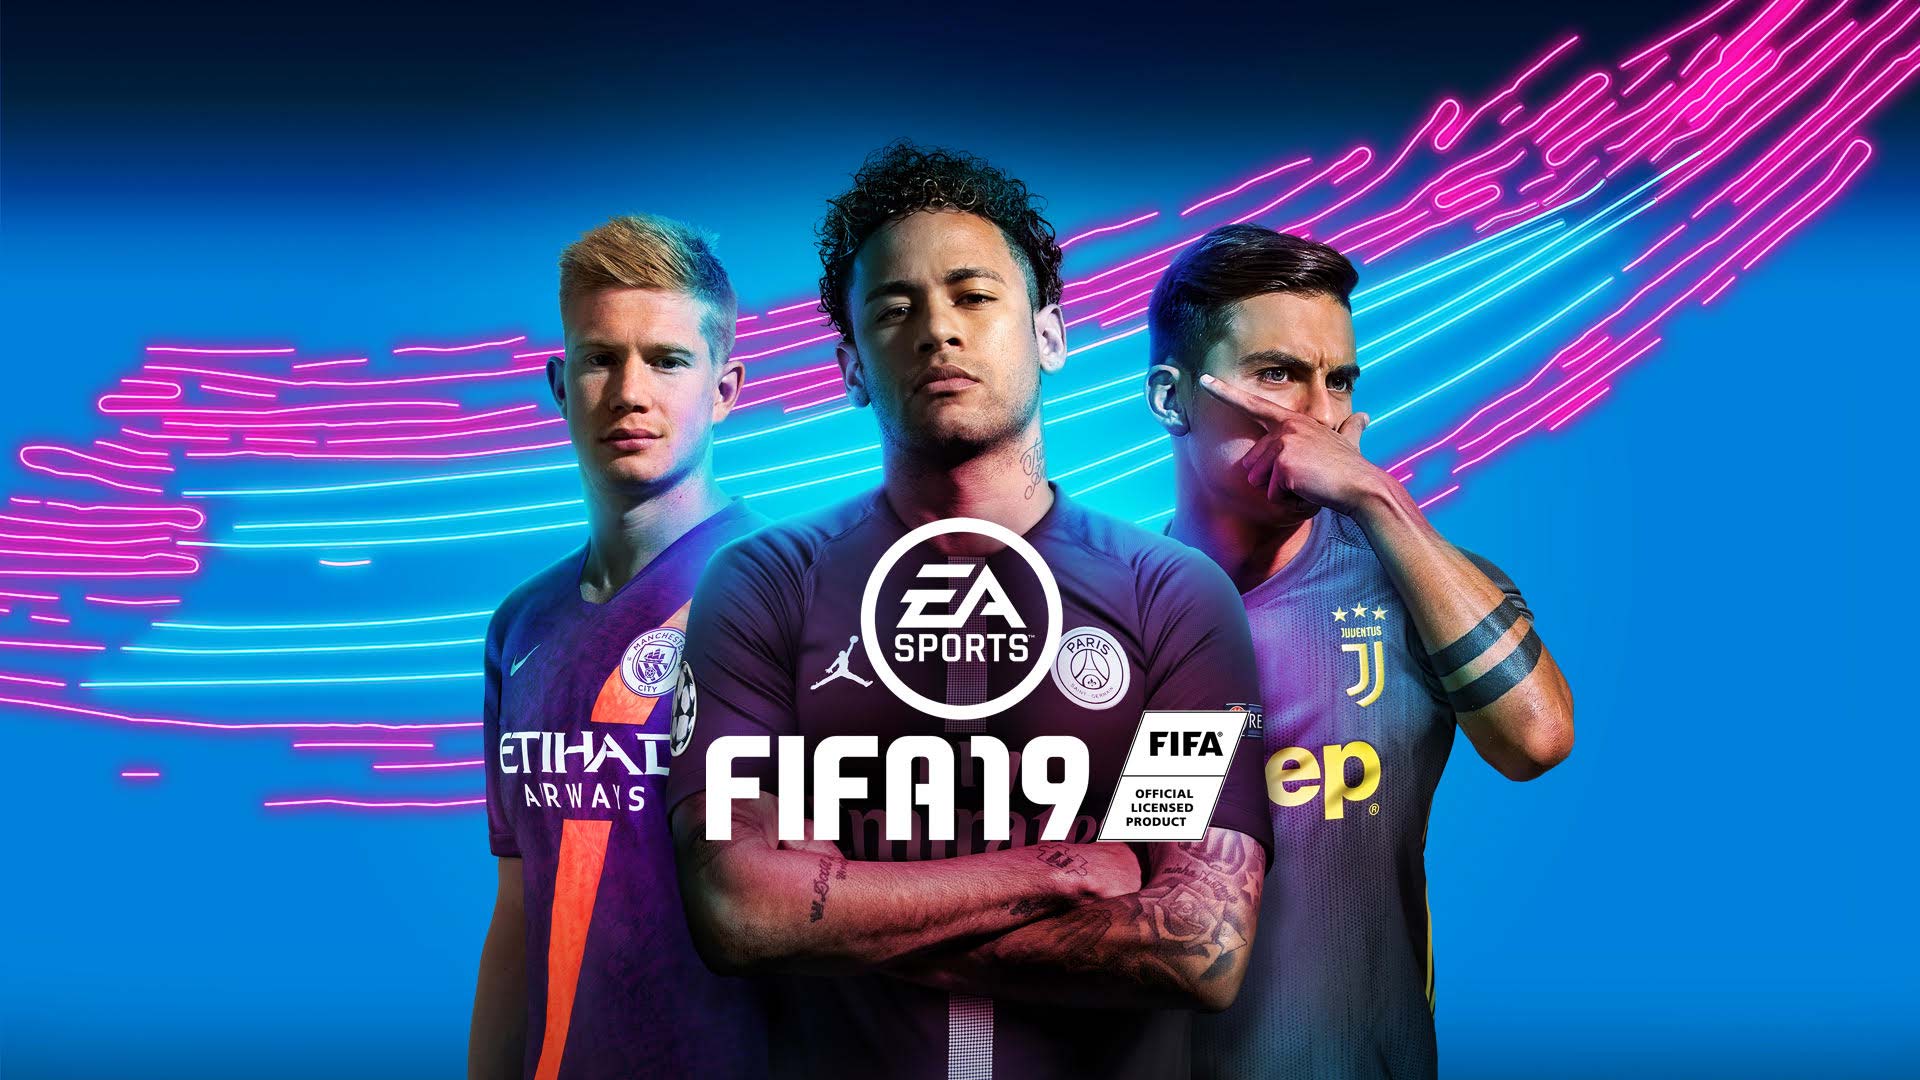 《FIFA 19》欧冠版全新封面公布 三大90后巨星上阵